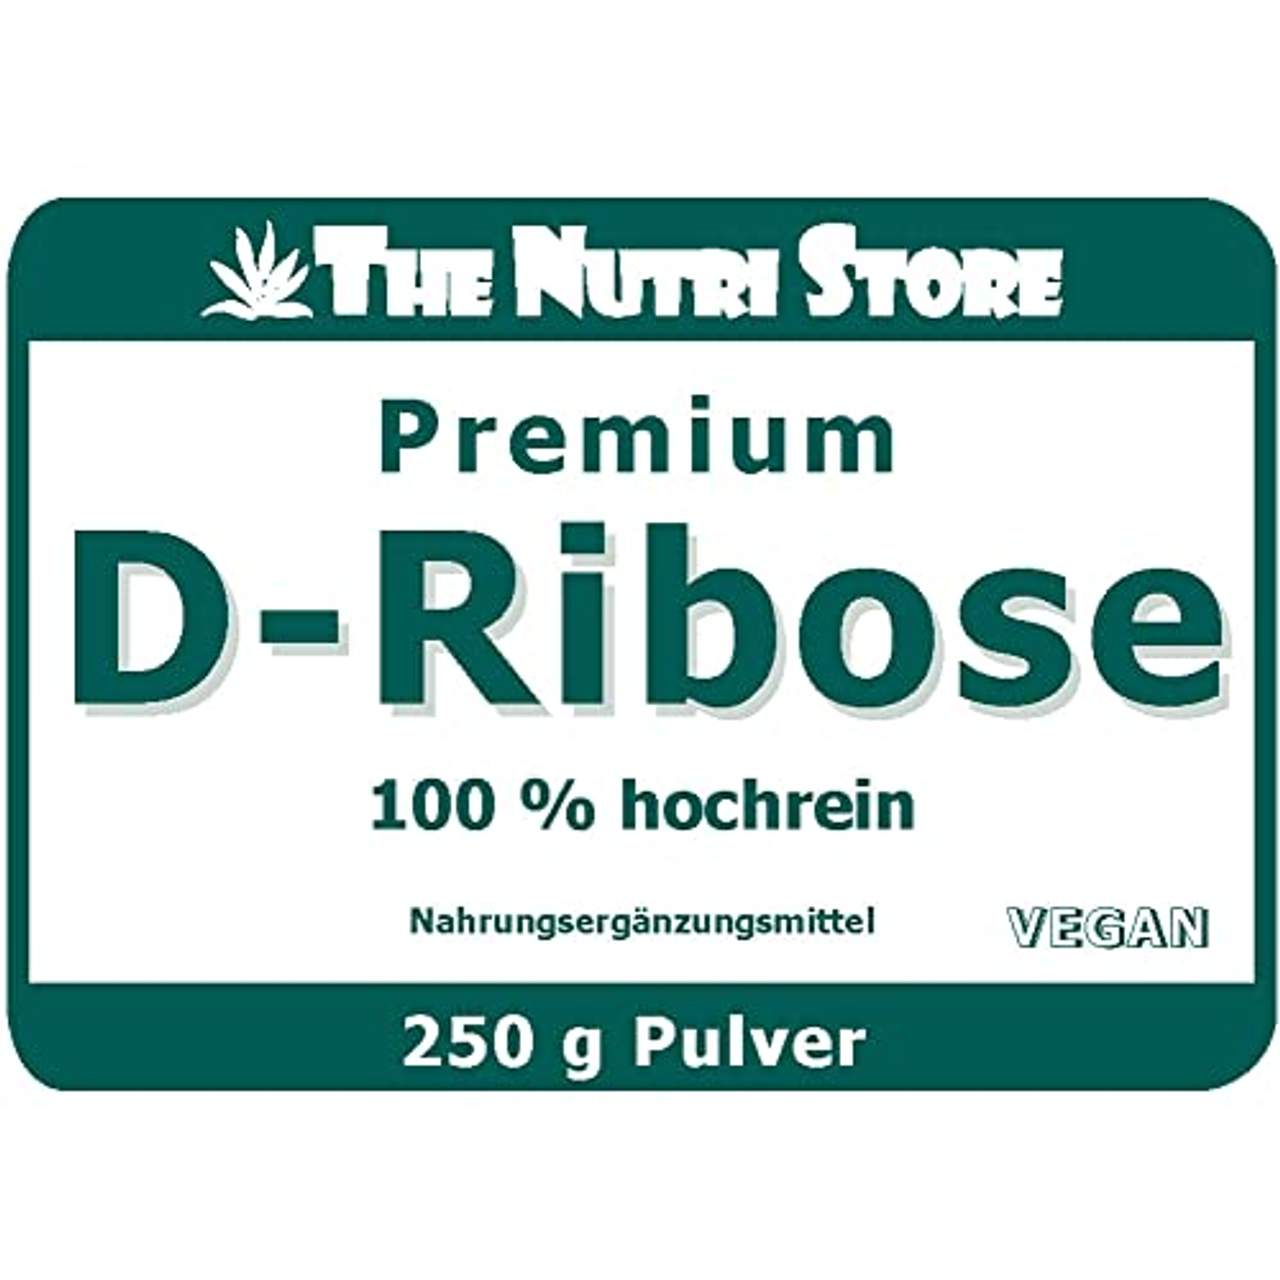 D-Ribose 100% hochrein Pulver 